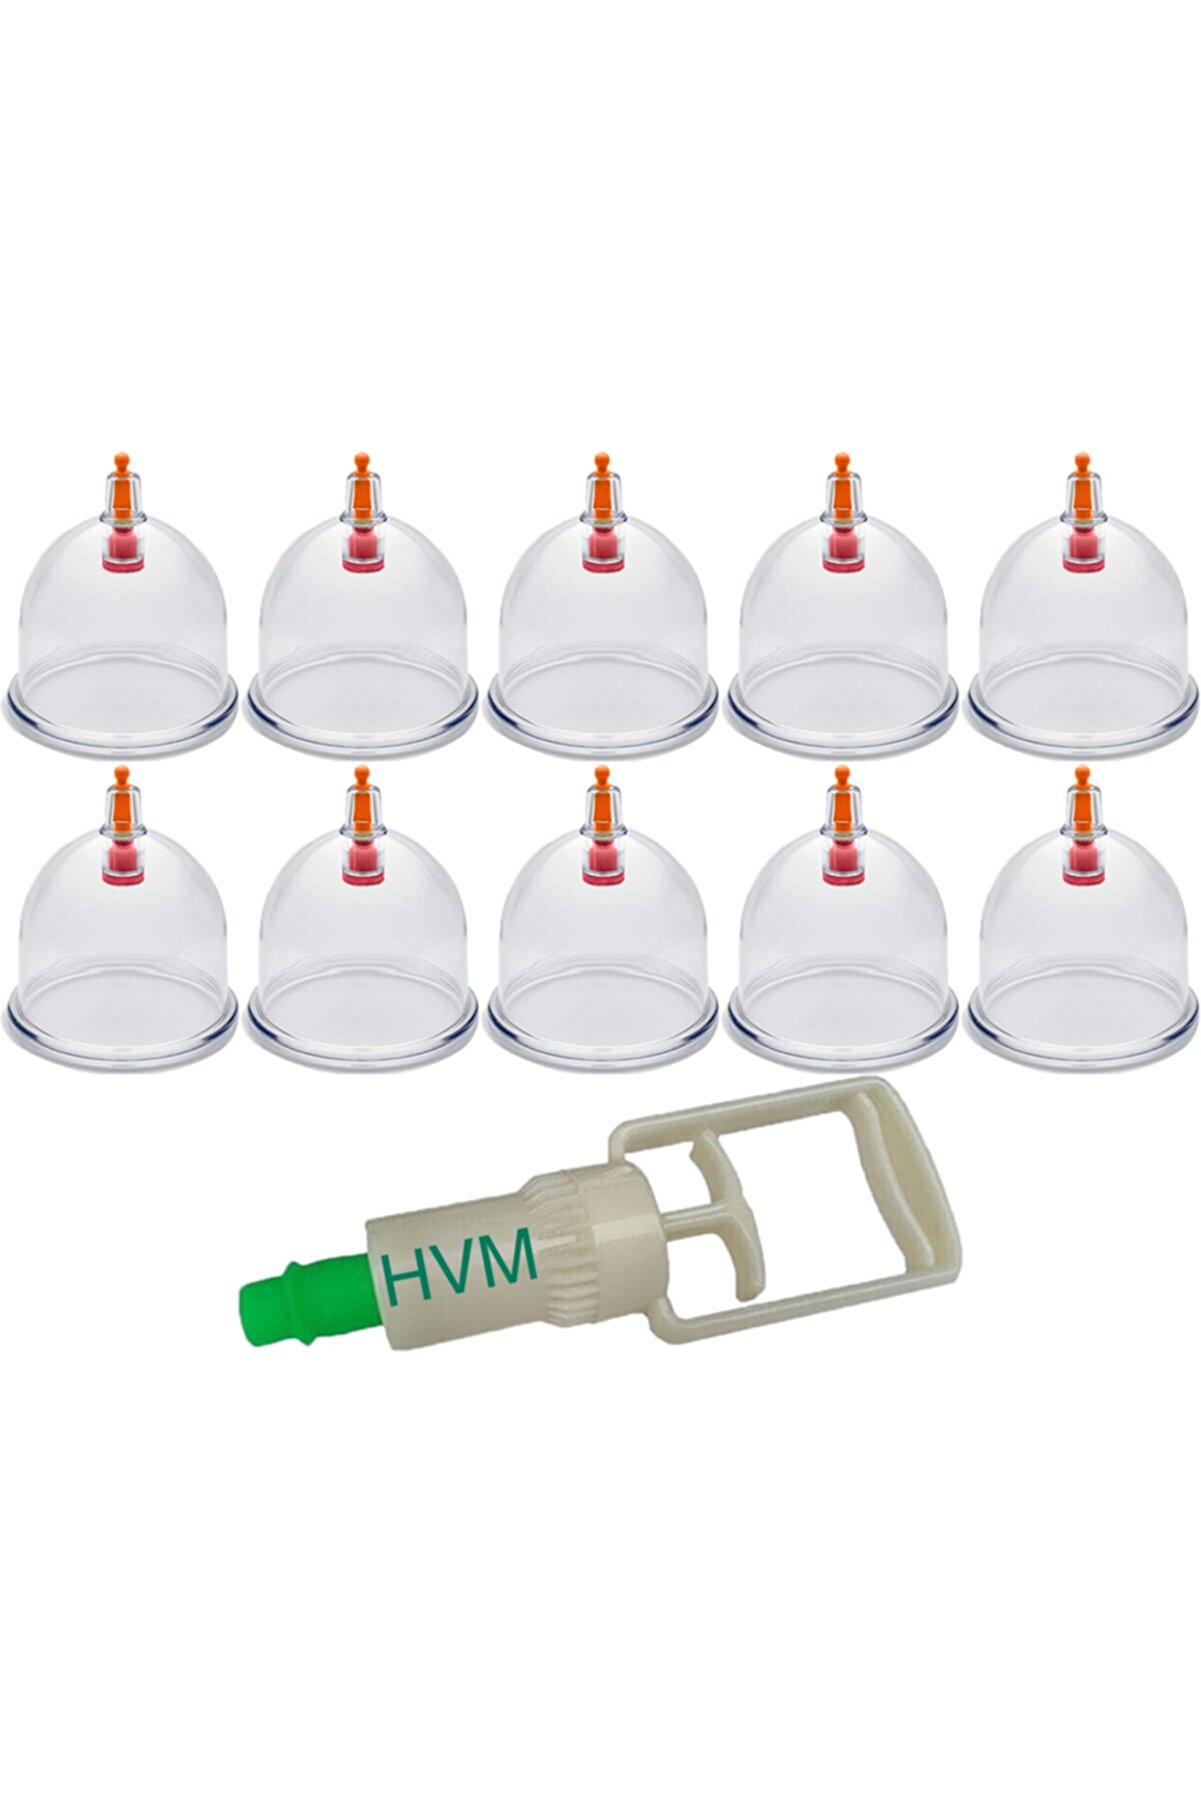 HVM 10 Adet 7 Cm Hacamat Kupası Ve Hacamat Pompası